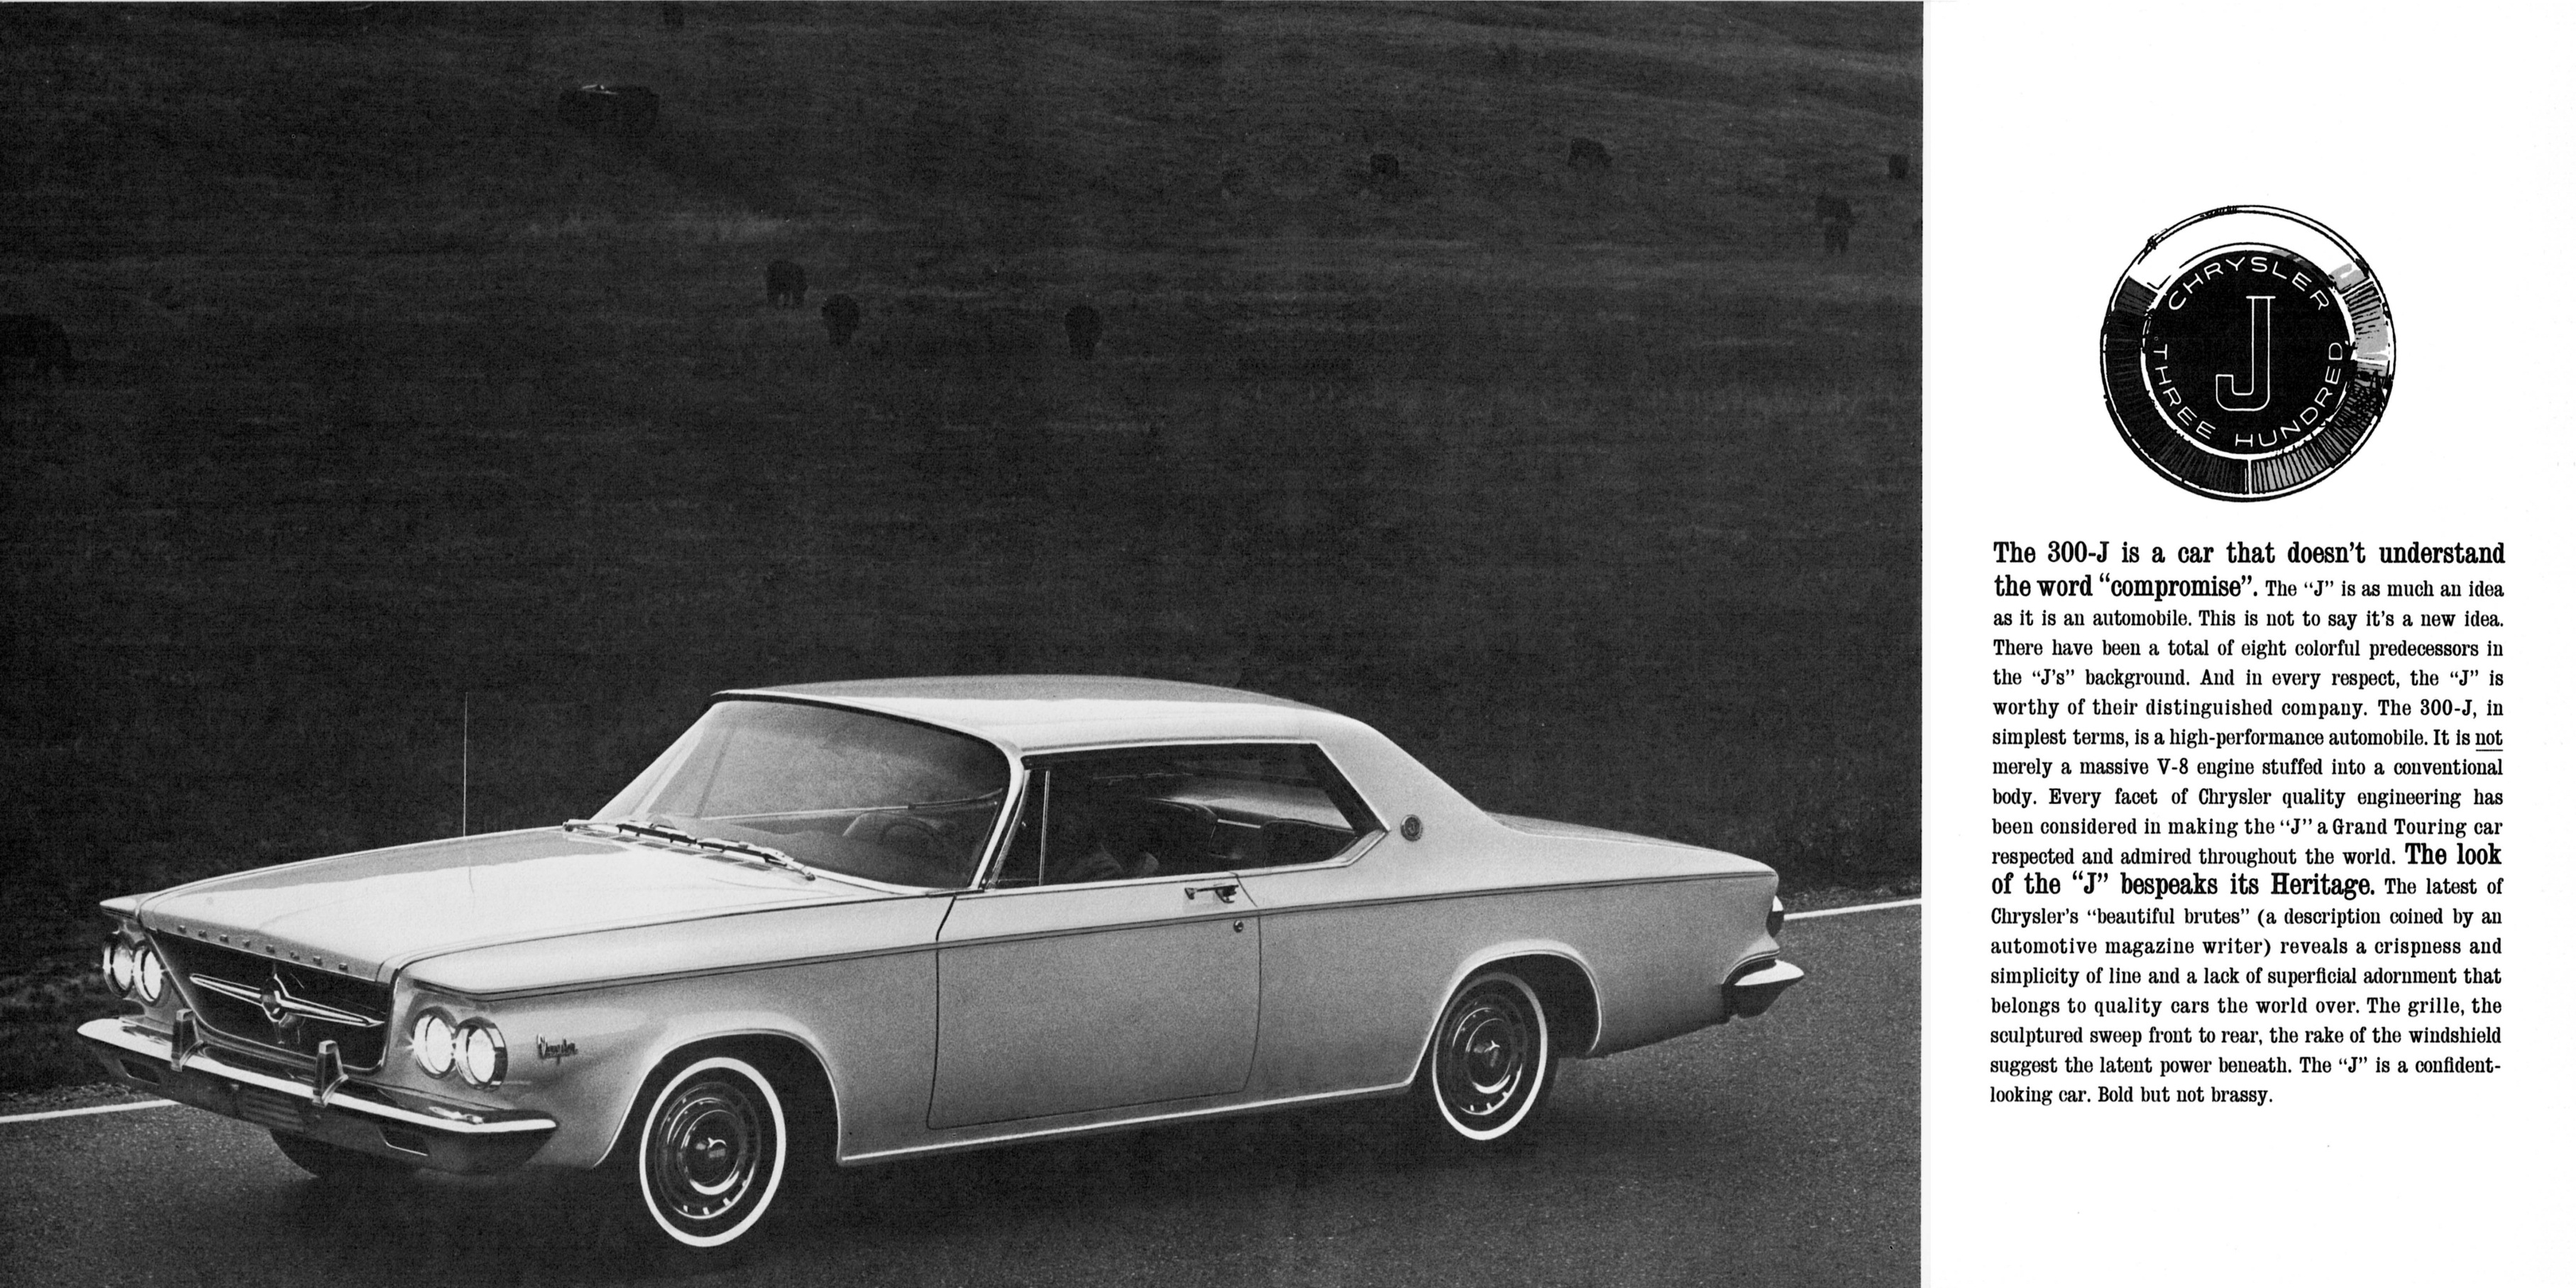 1963 Chrysler 300-J bw-04-05